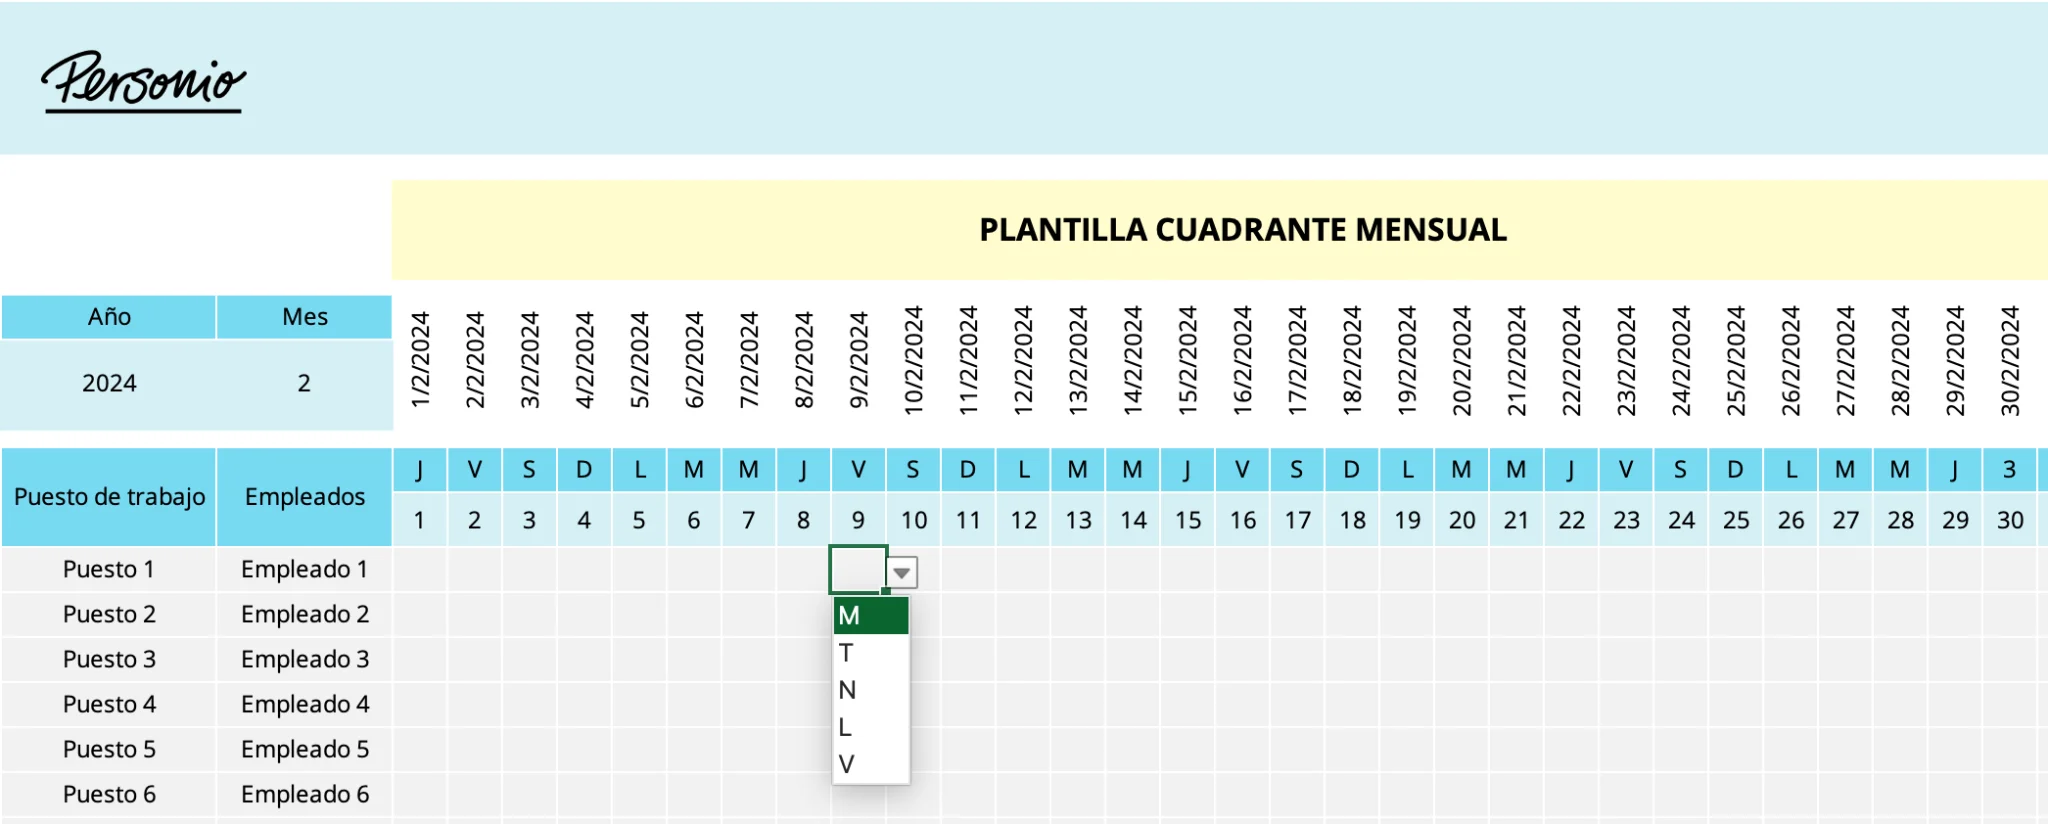 Plantilla cuadrante mensual (2)